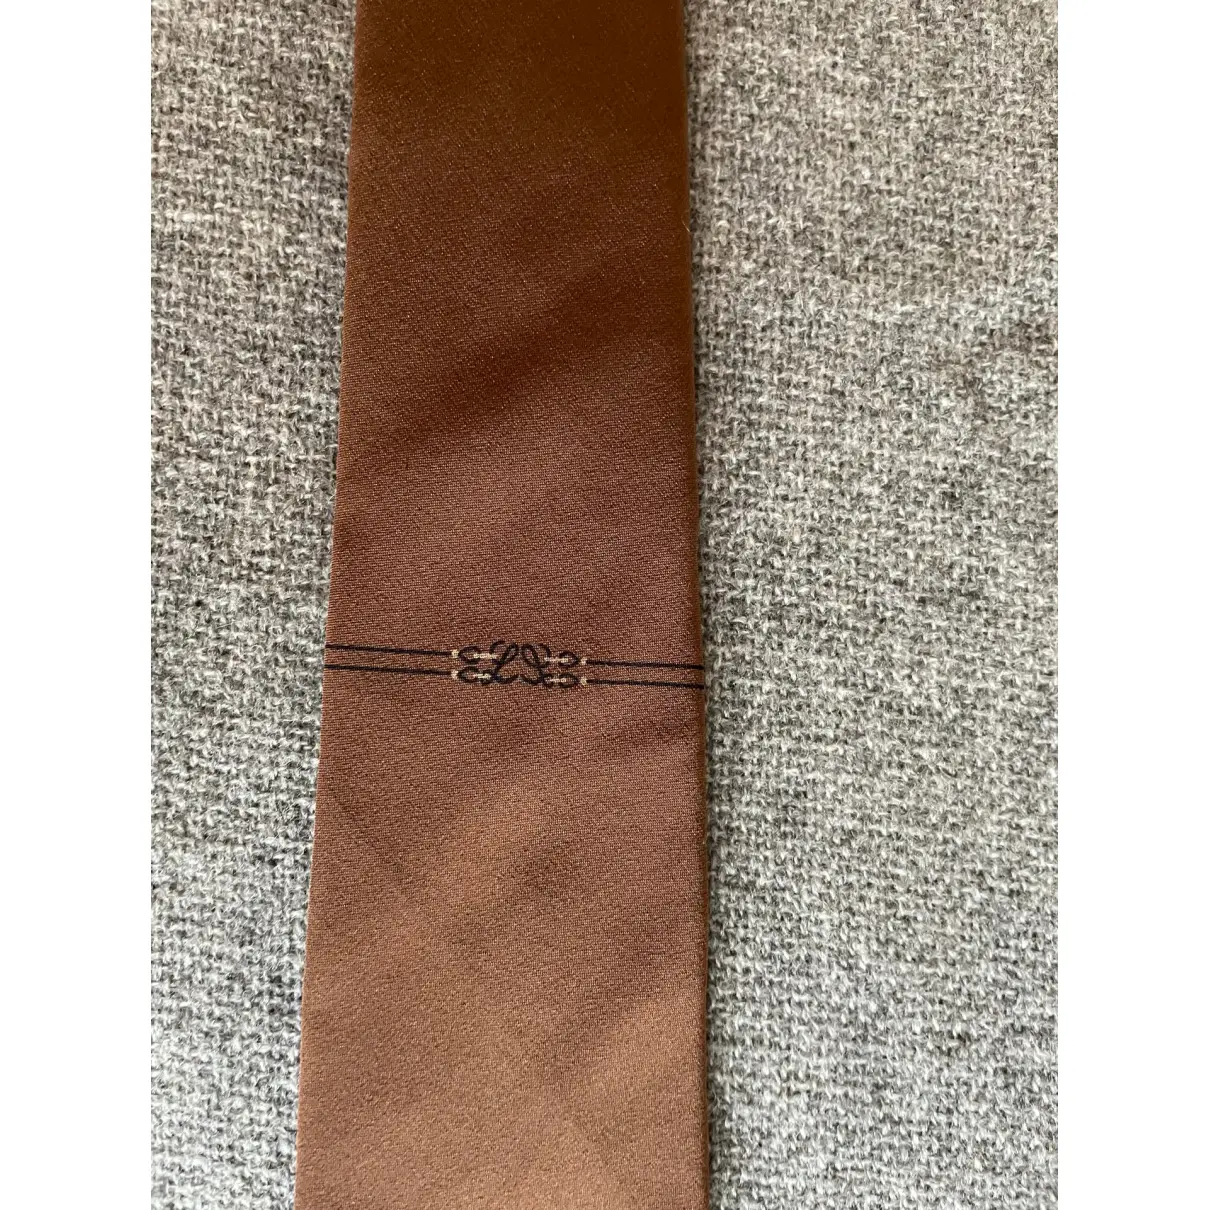 Buy Loewe Silk tie online - Vintage